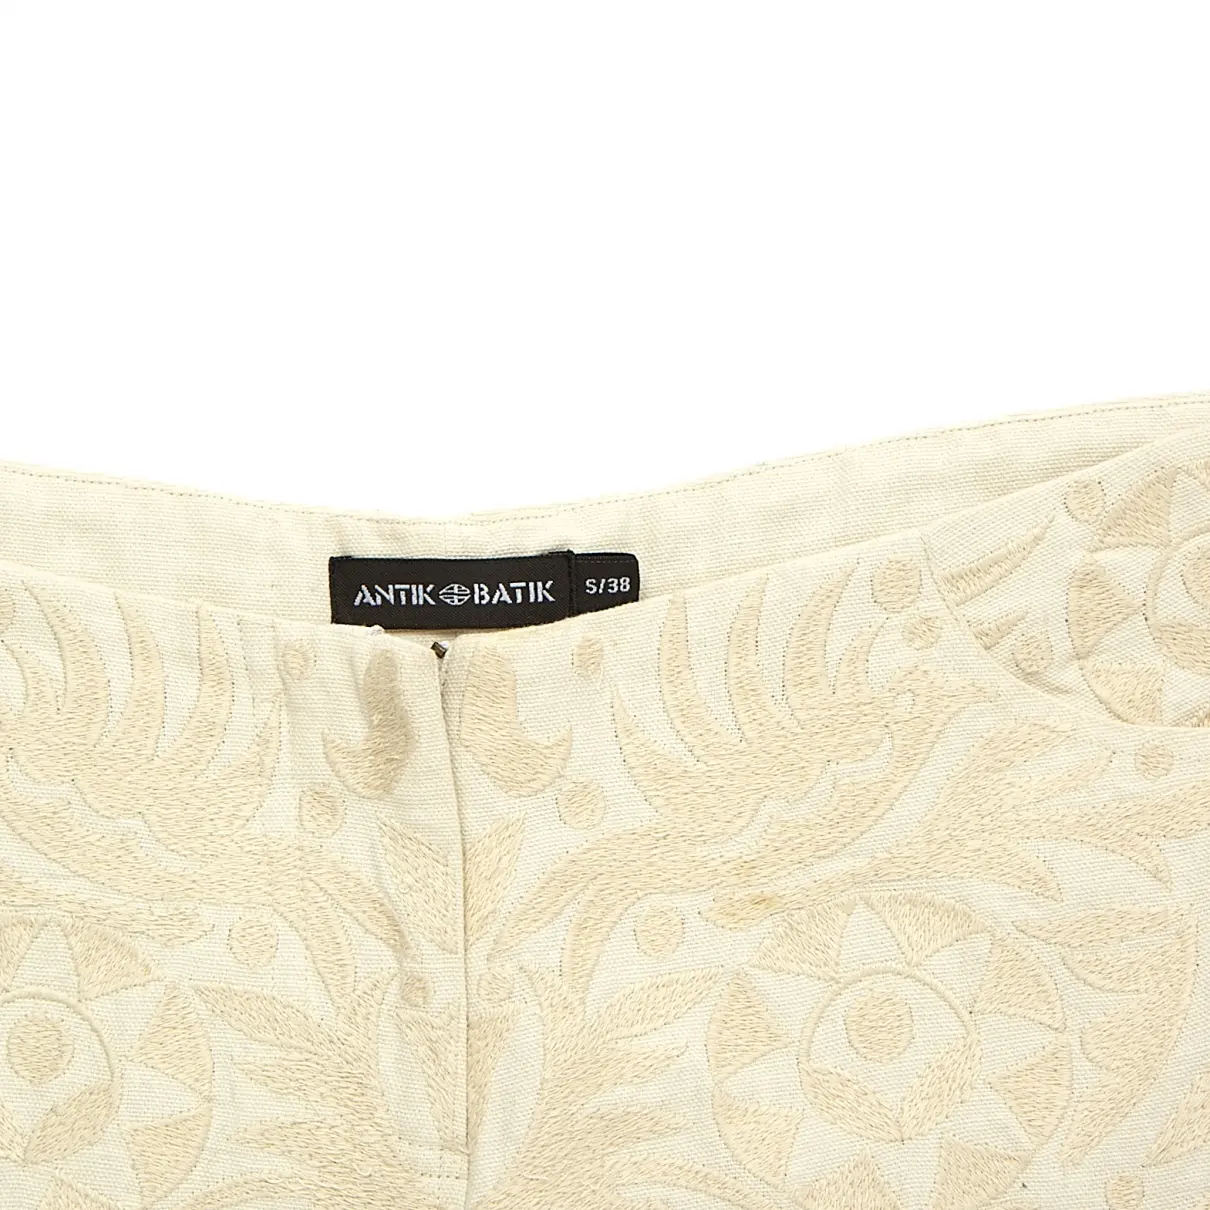 Buy Antik Batik Shorts online